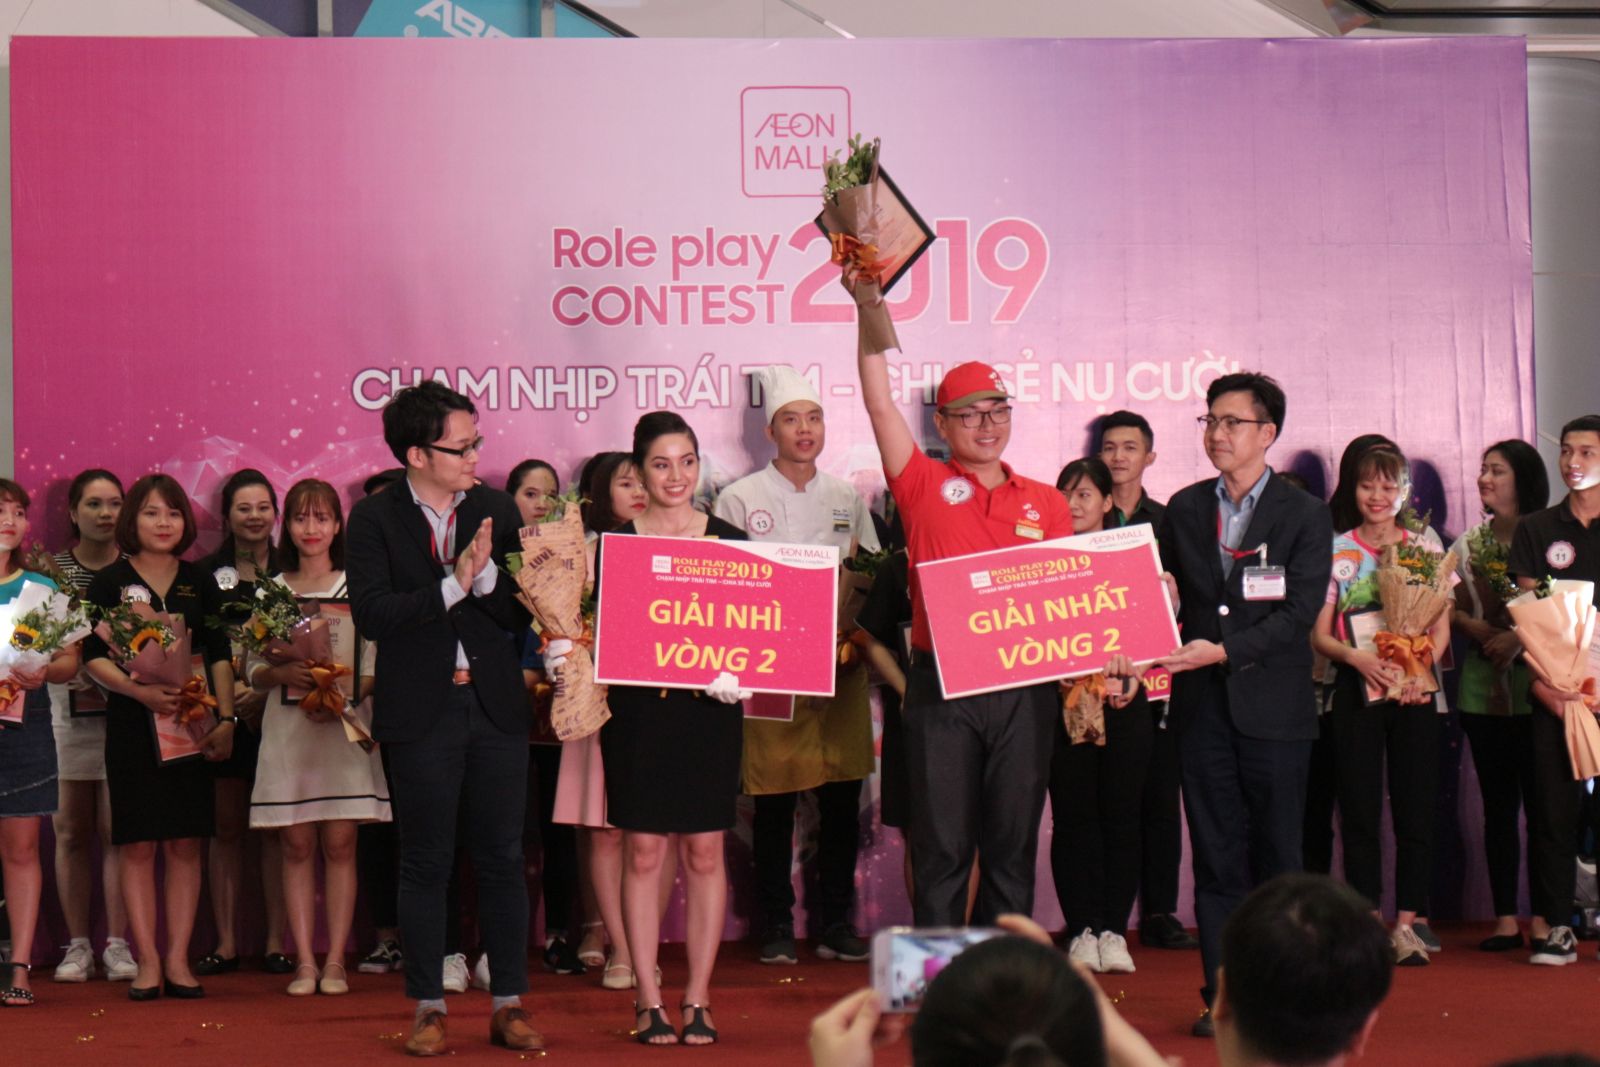 Role Play Contest 2019 – “Chạm Nhịp Tim – Chia Sẻ Nụ Cười” Cùng Aeon Mall Long Biên